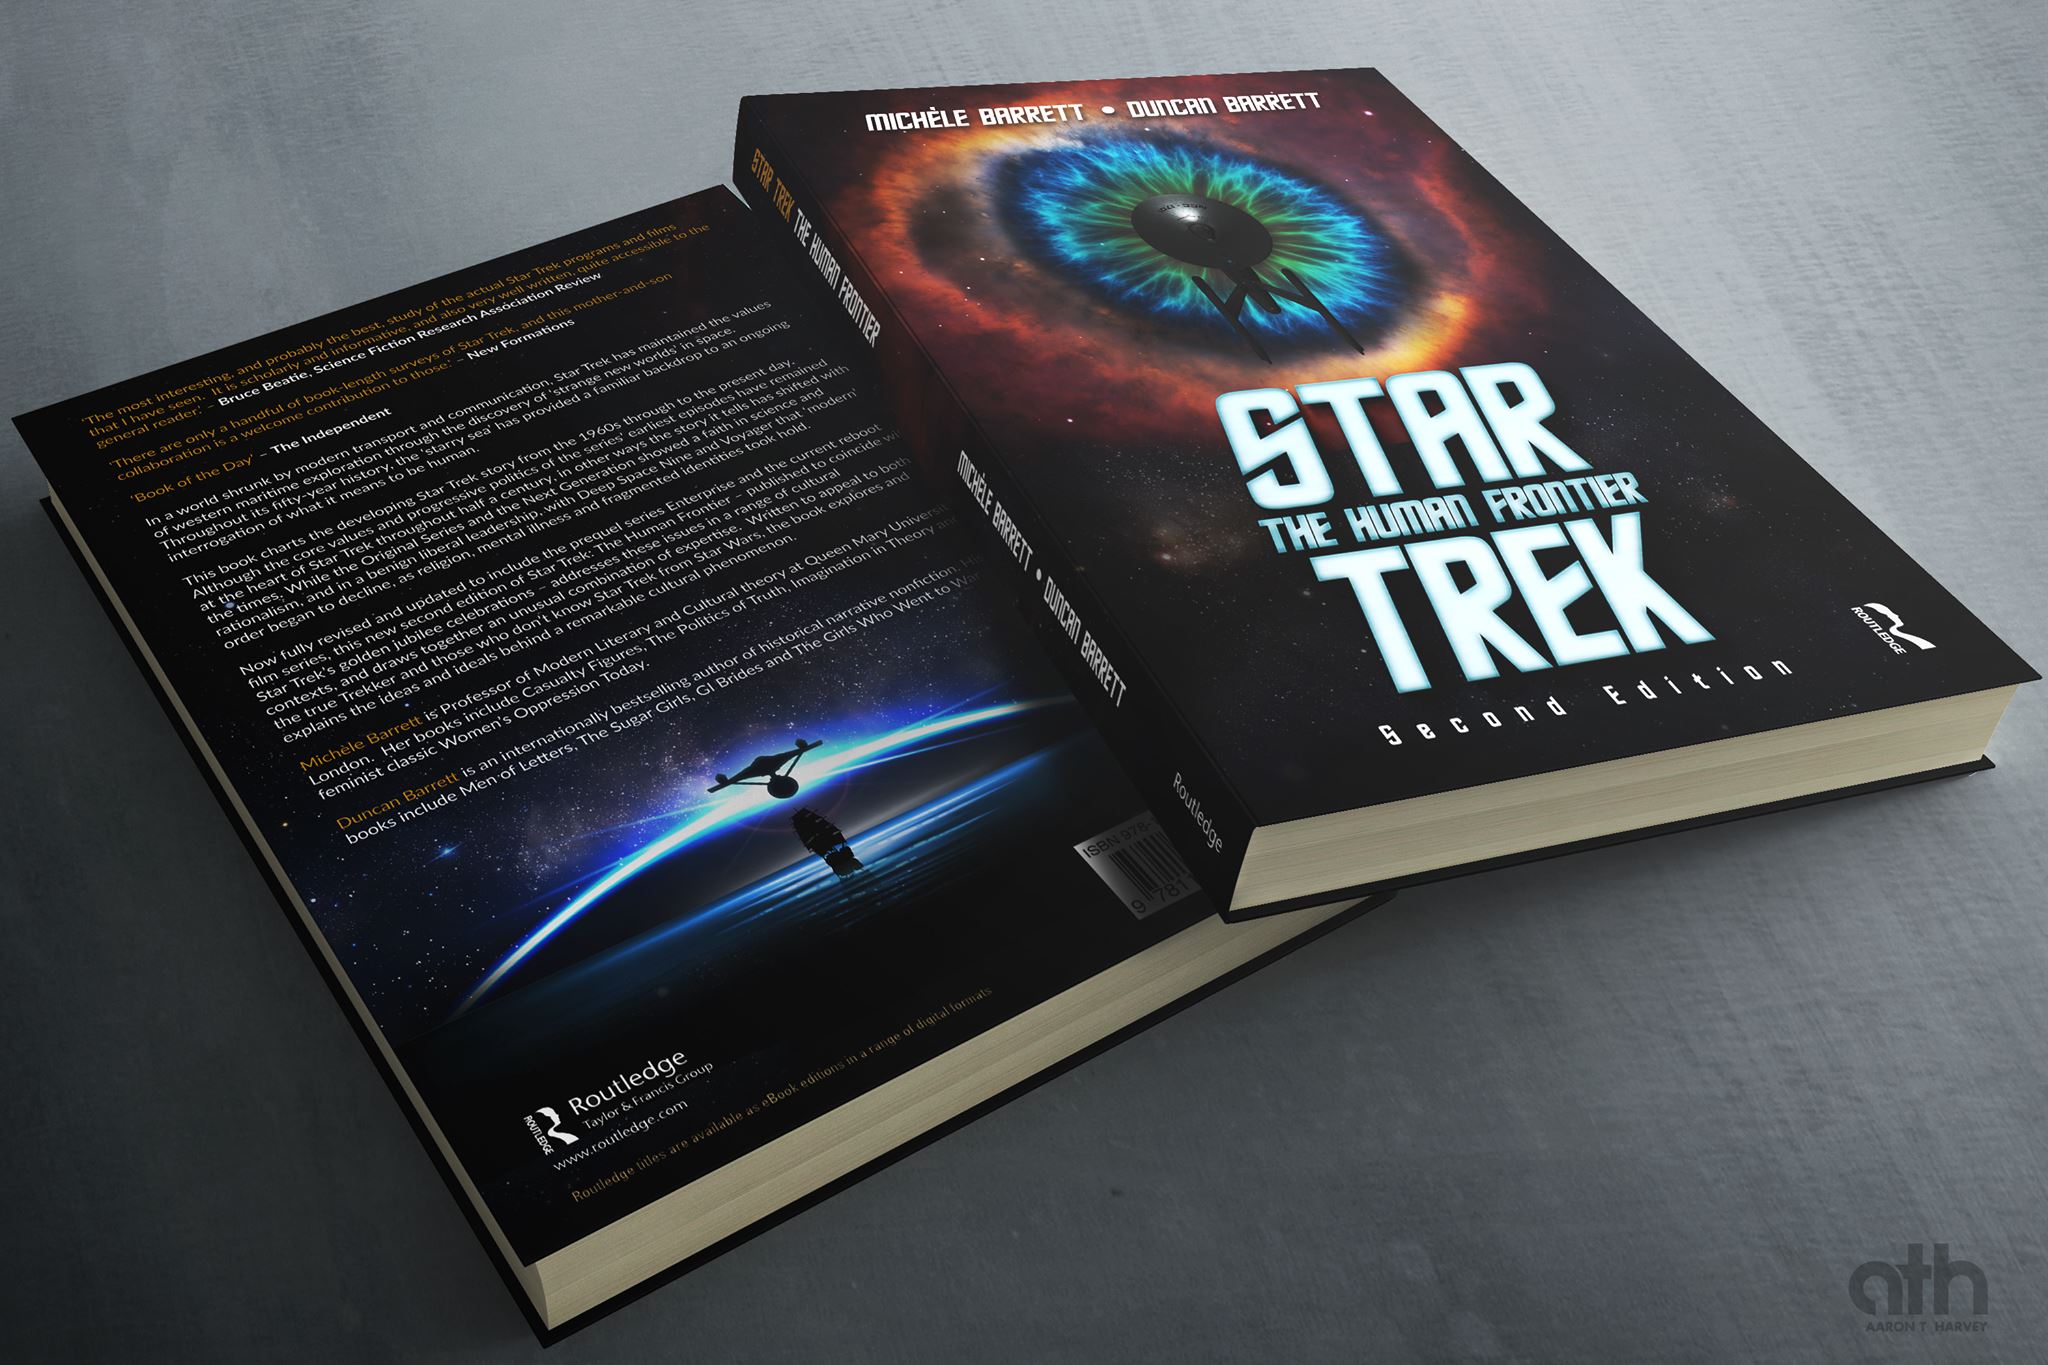 Picture of Duncan Barrett's book: Star Trek The Human Frontier